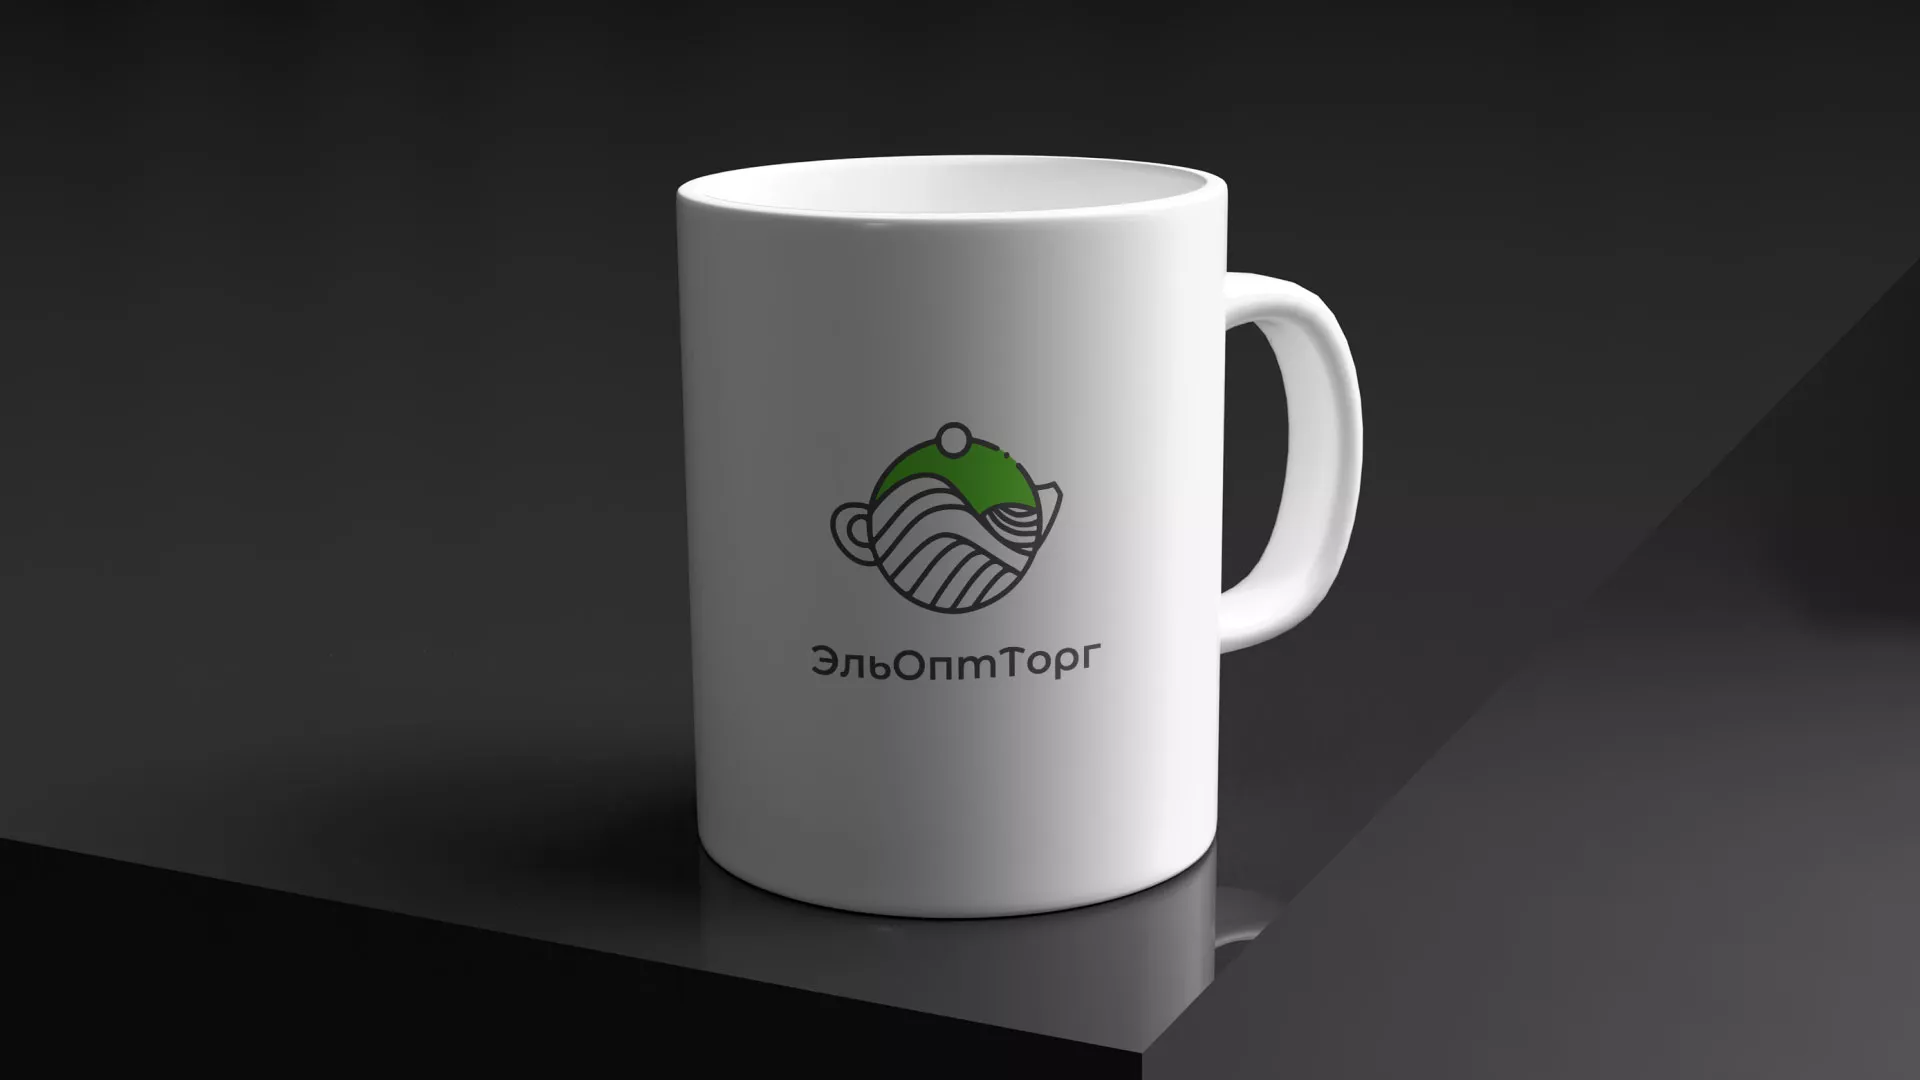 Создание логотипа для компании по продаже посуды и товаров для дома в Торопце